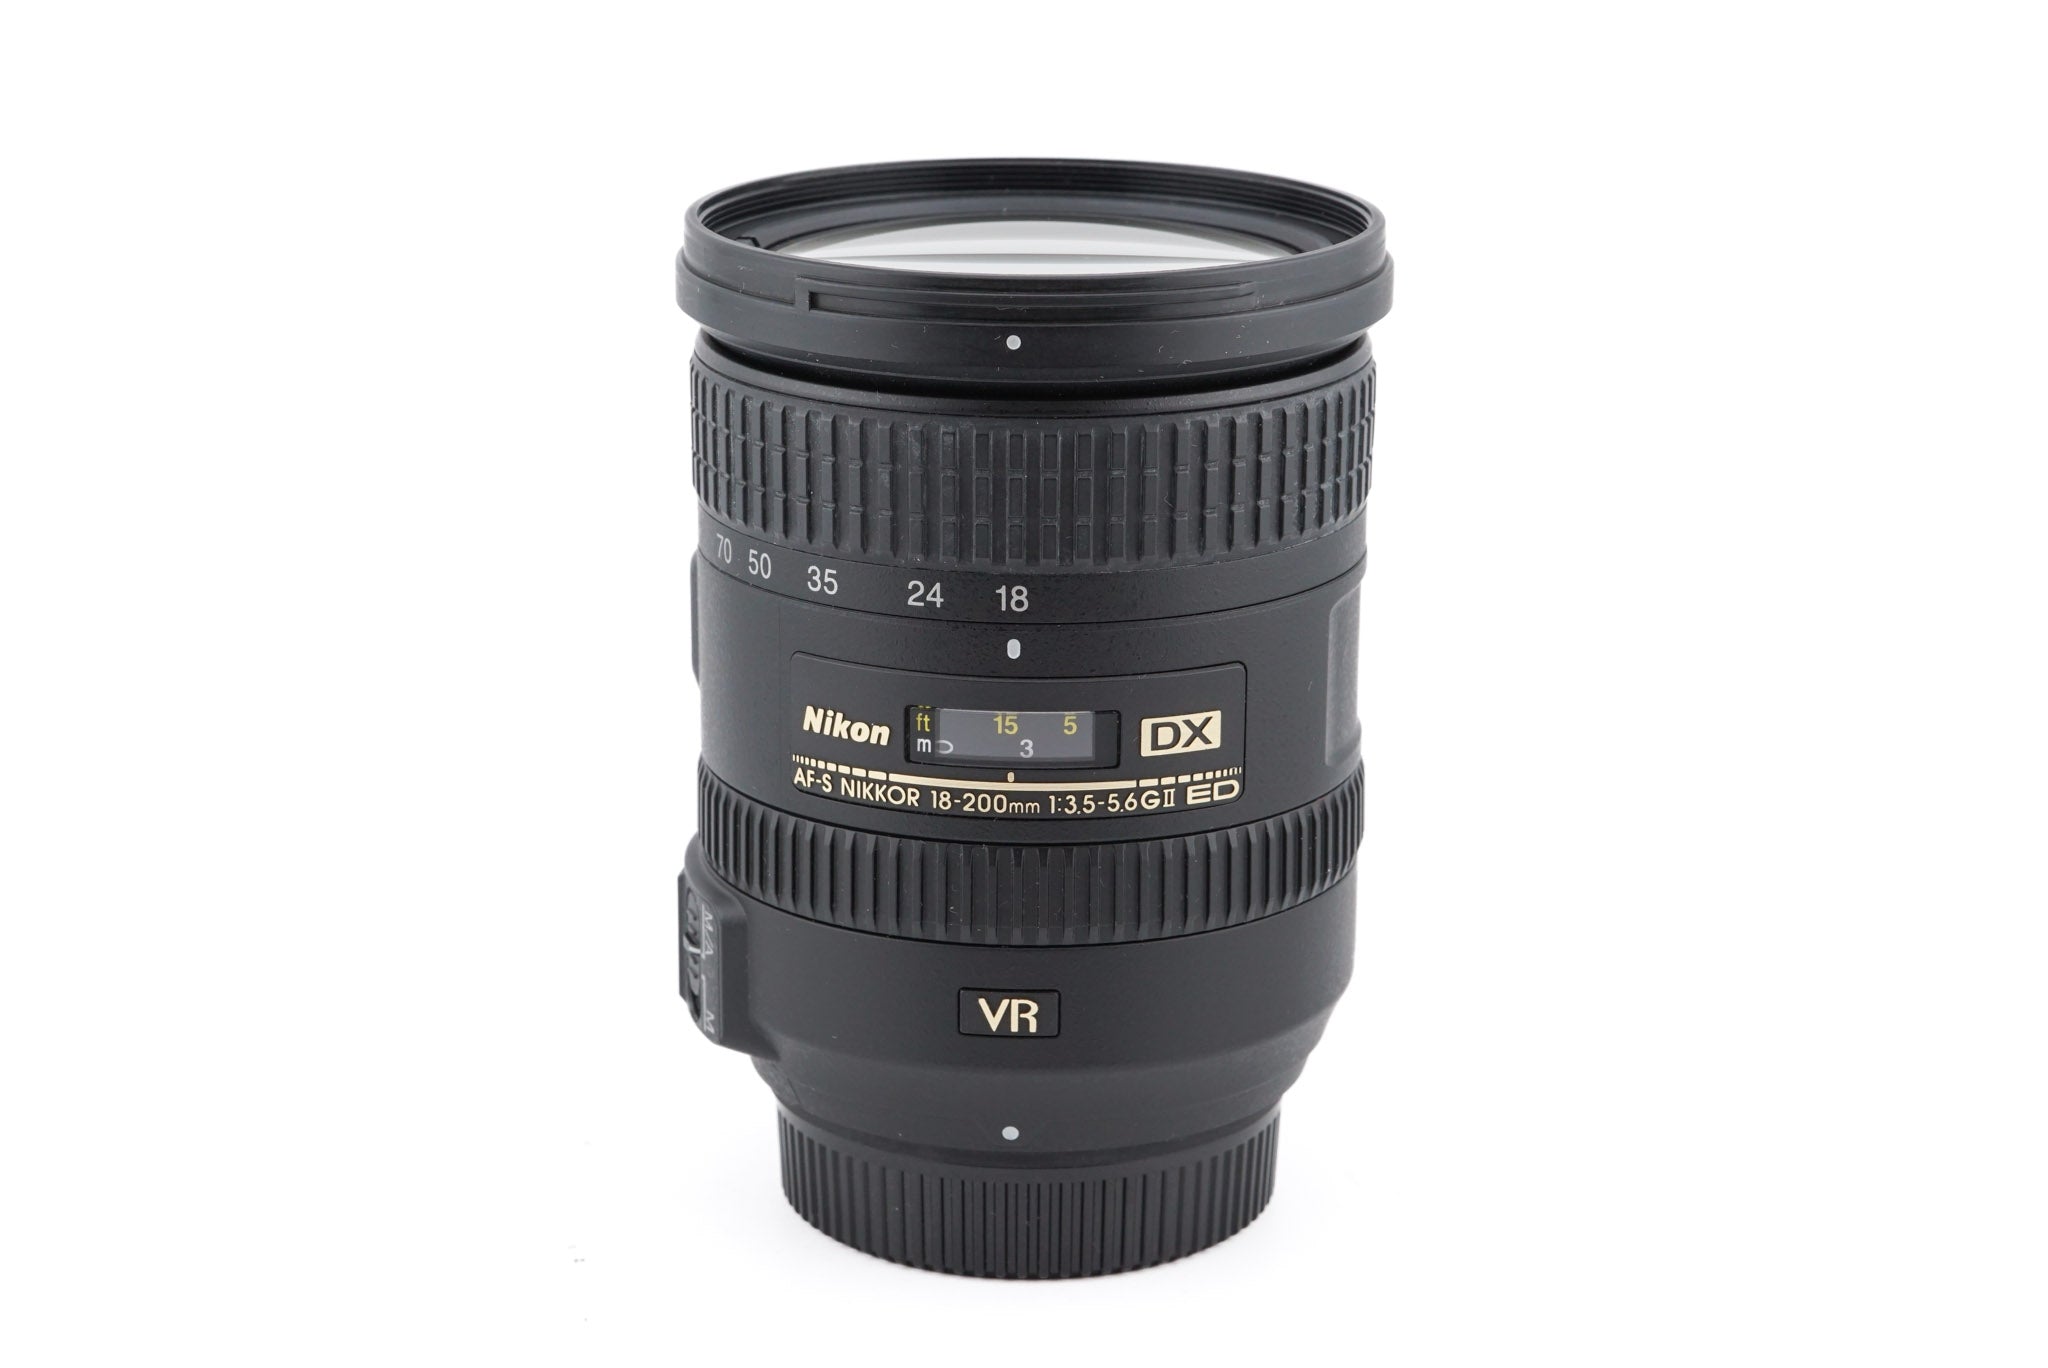 Nikon 18-200mm f3.5-5.6 G ED VR II AF-S Nikkor - Lens – Kamerastore